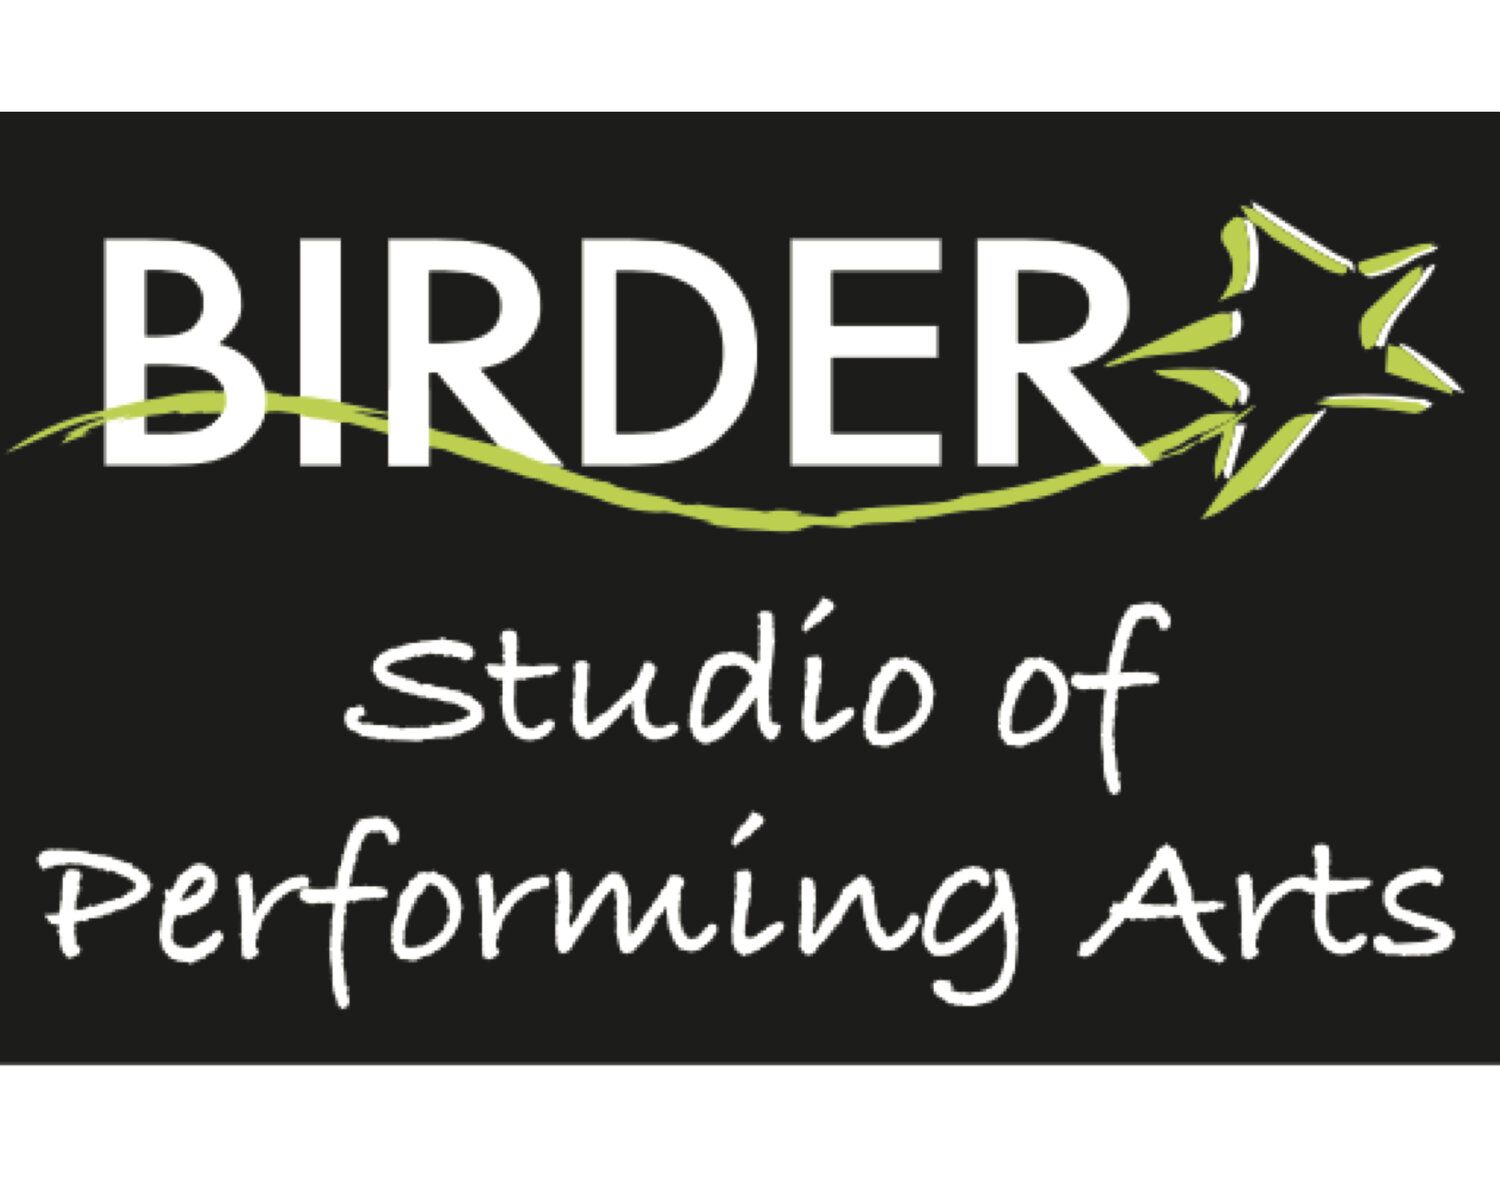 Birder on BroadwayBirder Studio of Performing Arts